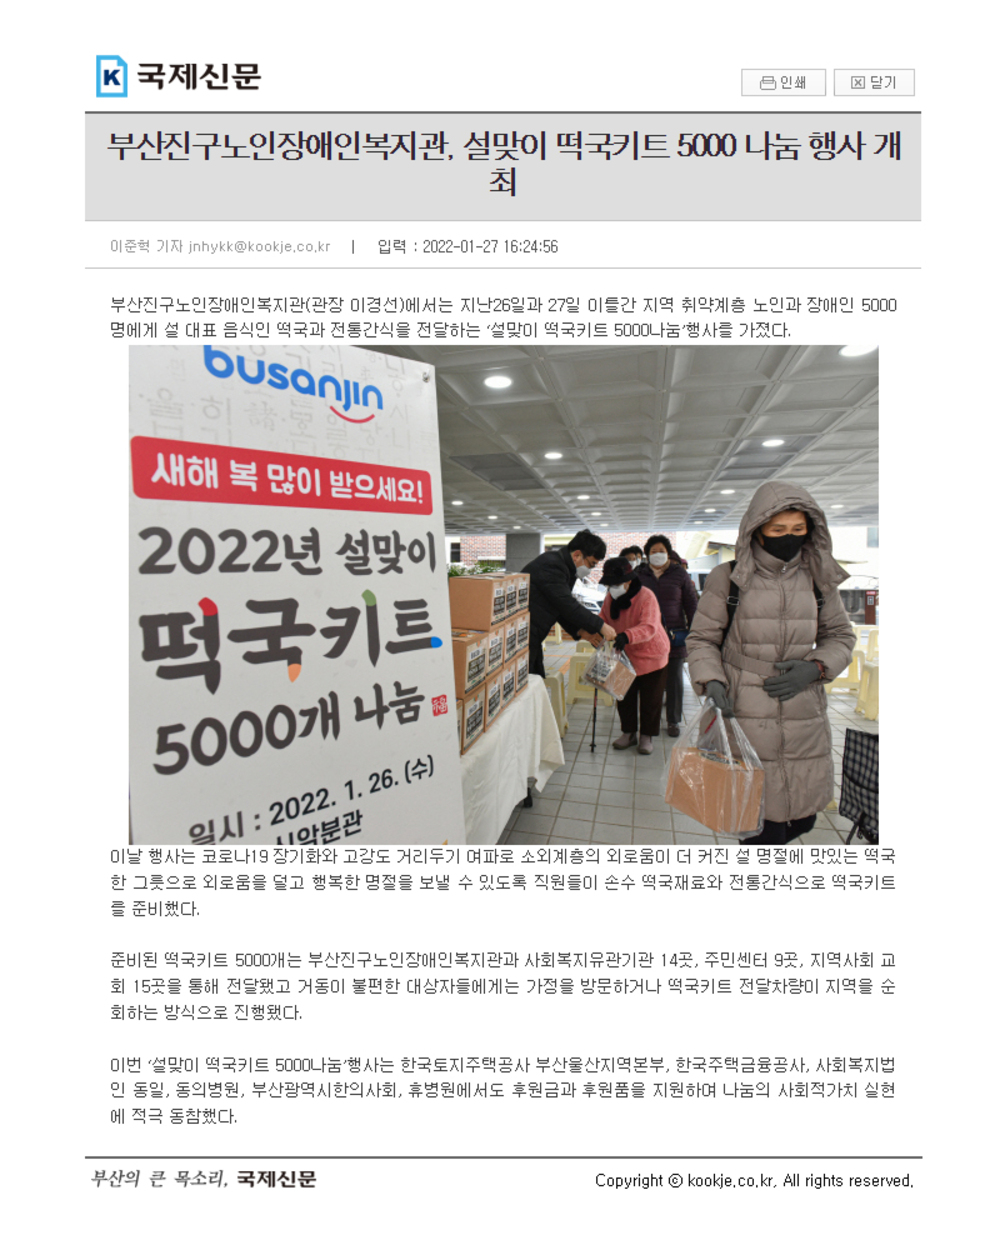 [국제신문] 부산진구노인장애인복지관, 설맞이 떡국키트 5000 나눔 행사 개최.jpg